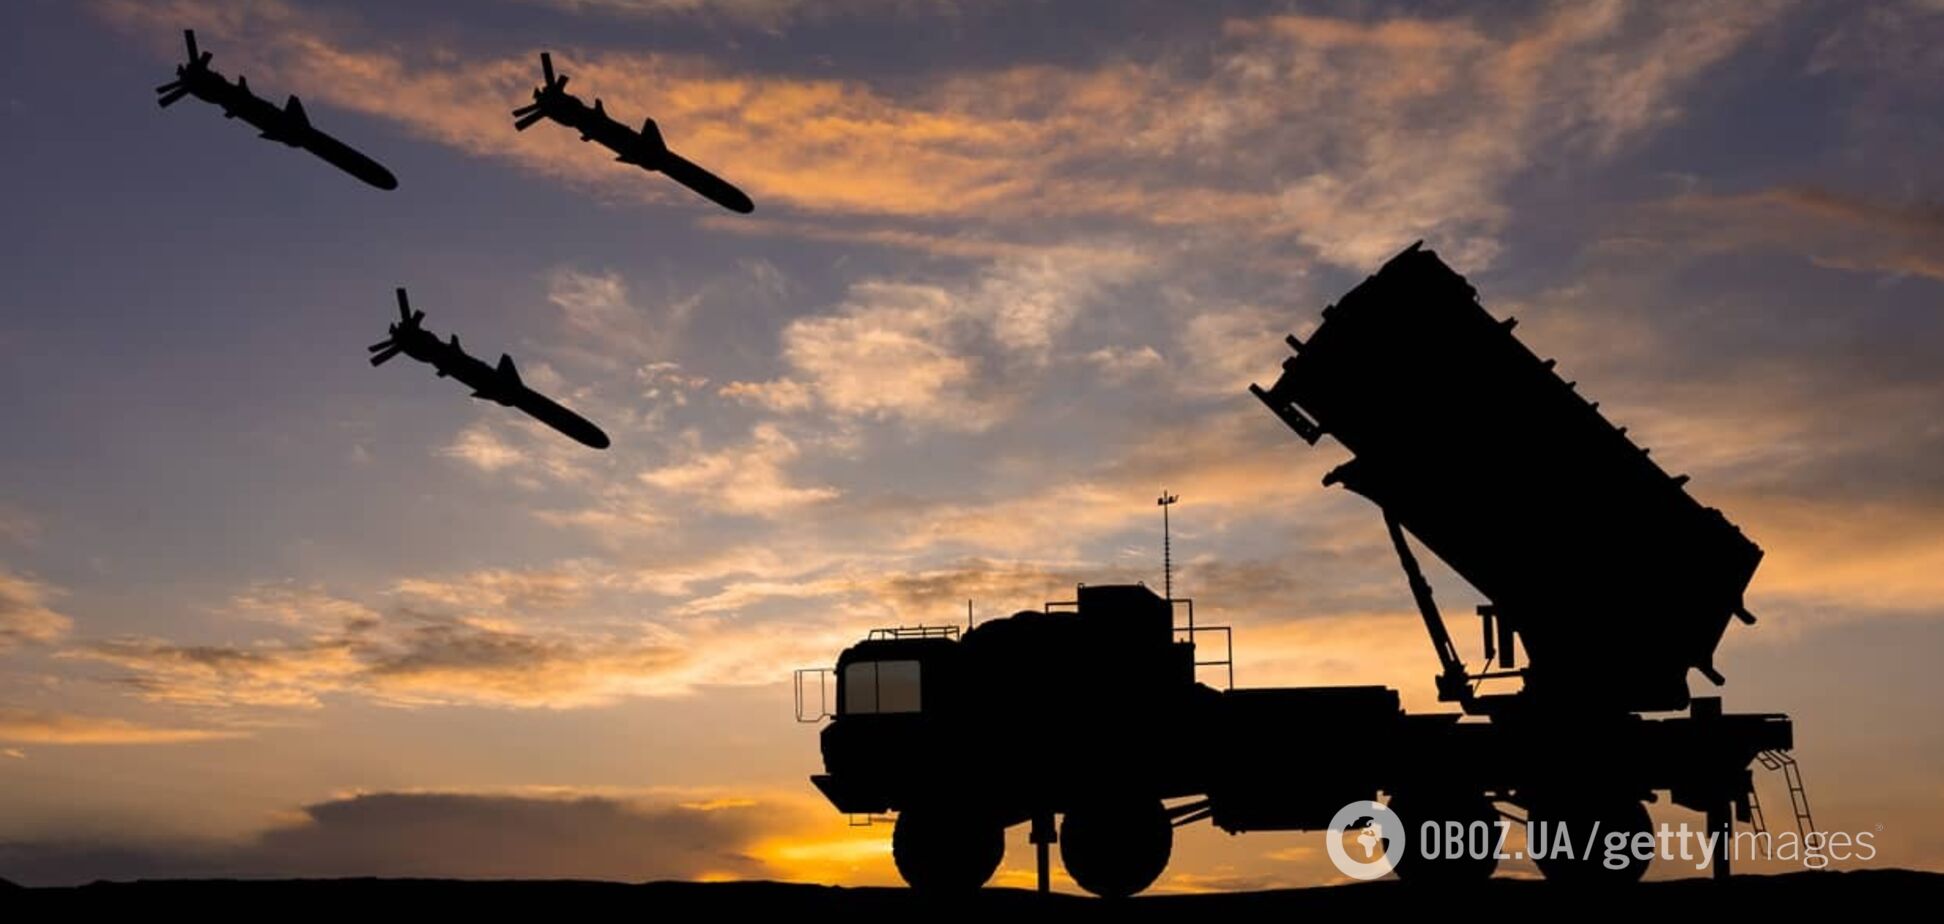 Украина просила у Греции средства ПВО, но получила отказ: премьер Мицотакис озвучил причину